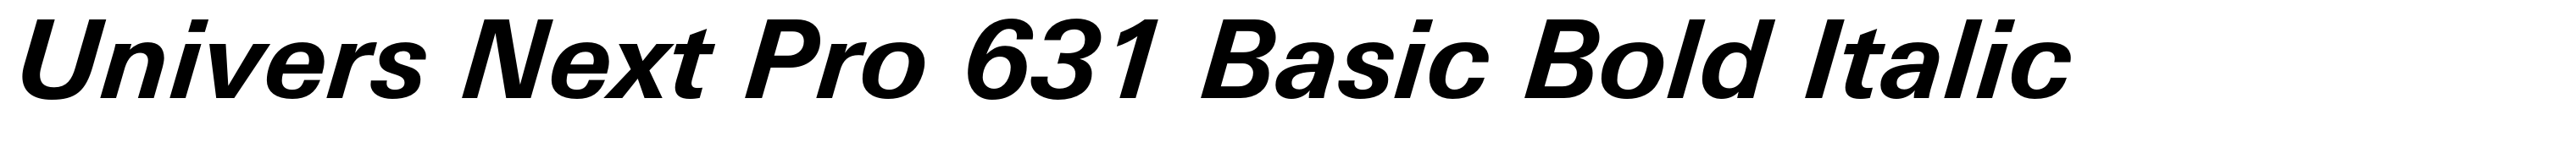 Univers Next Pro 631 Basic Bold Italic